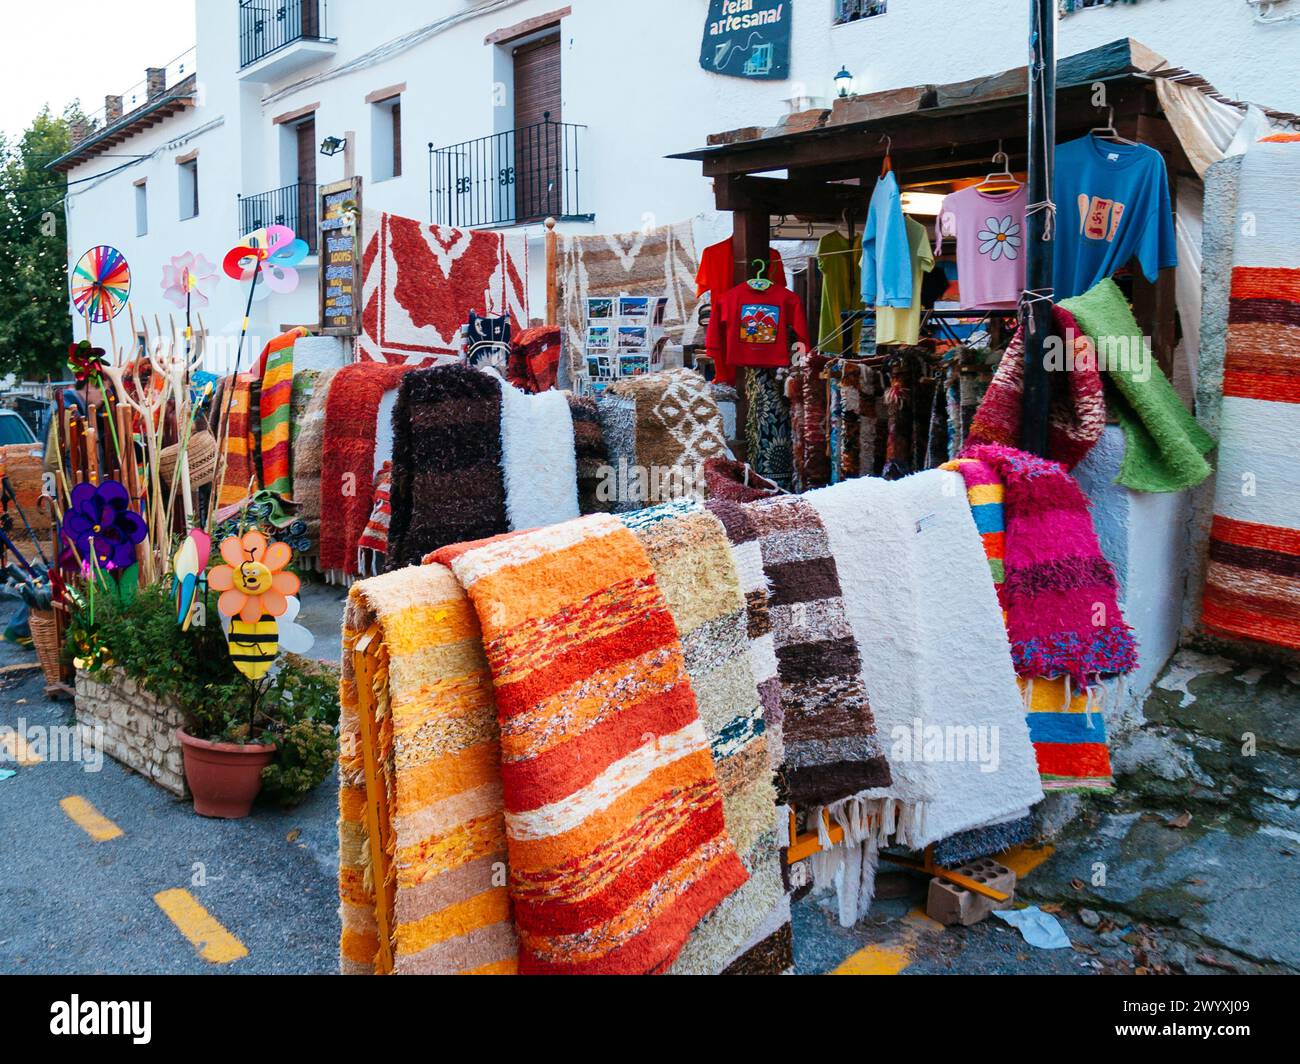 Magasin vendant 'Jarapas', tapis typiques faits à la main de la Alpujarra, Grenade. Capileira, Las Alpujarras, Grenade, Andalucía, Espagne, Europe Banque D'Images